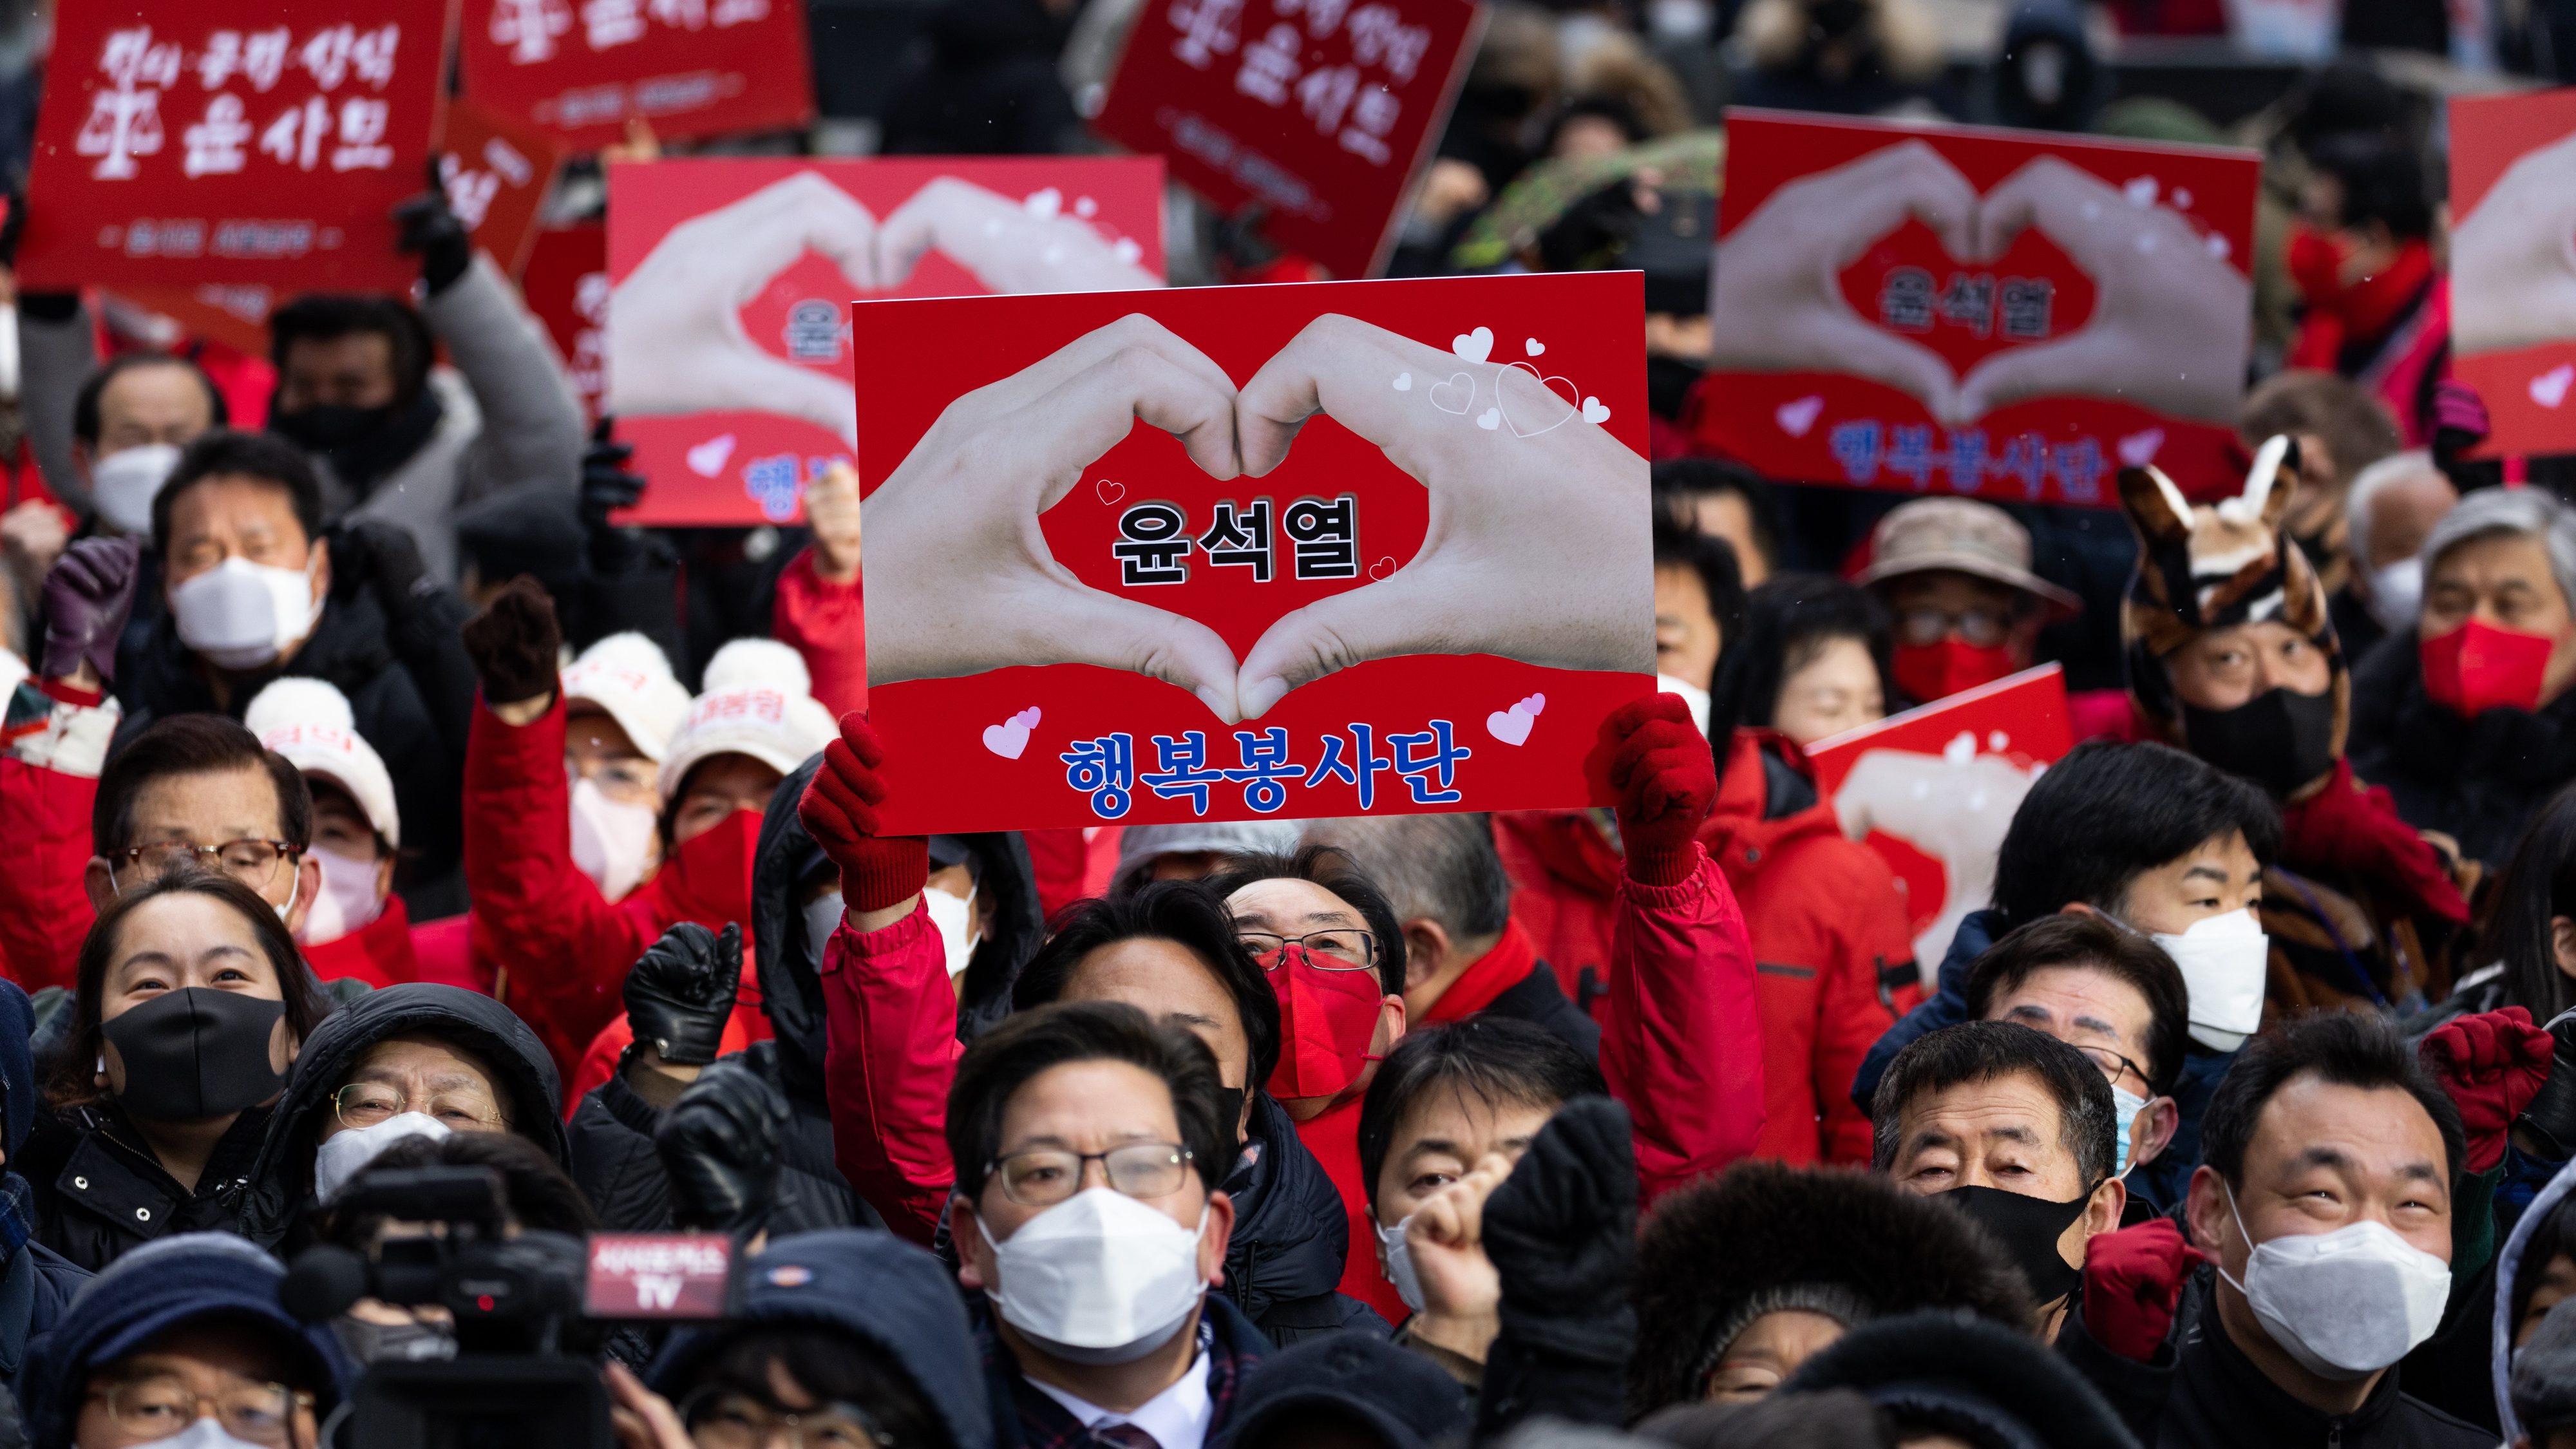 韓国大統領選挙を前に「反フェミニズム政策」が台頭している | 薬師寺克行「今月の外交ニュースの読み方」